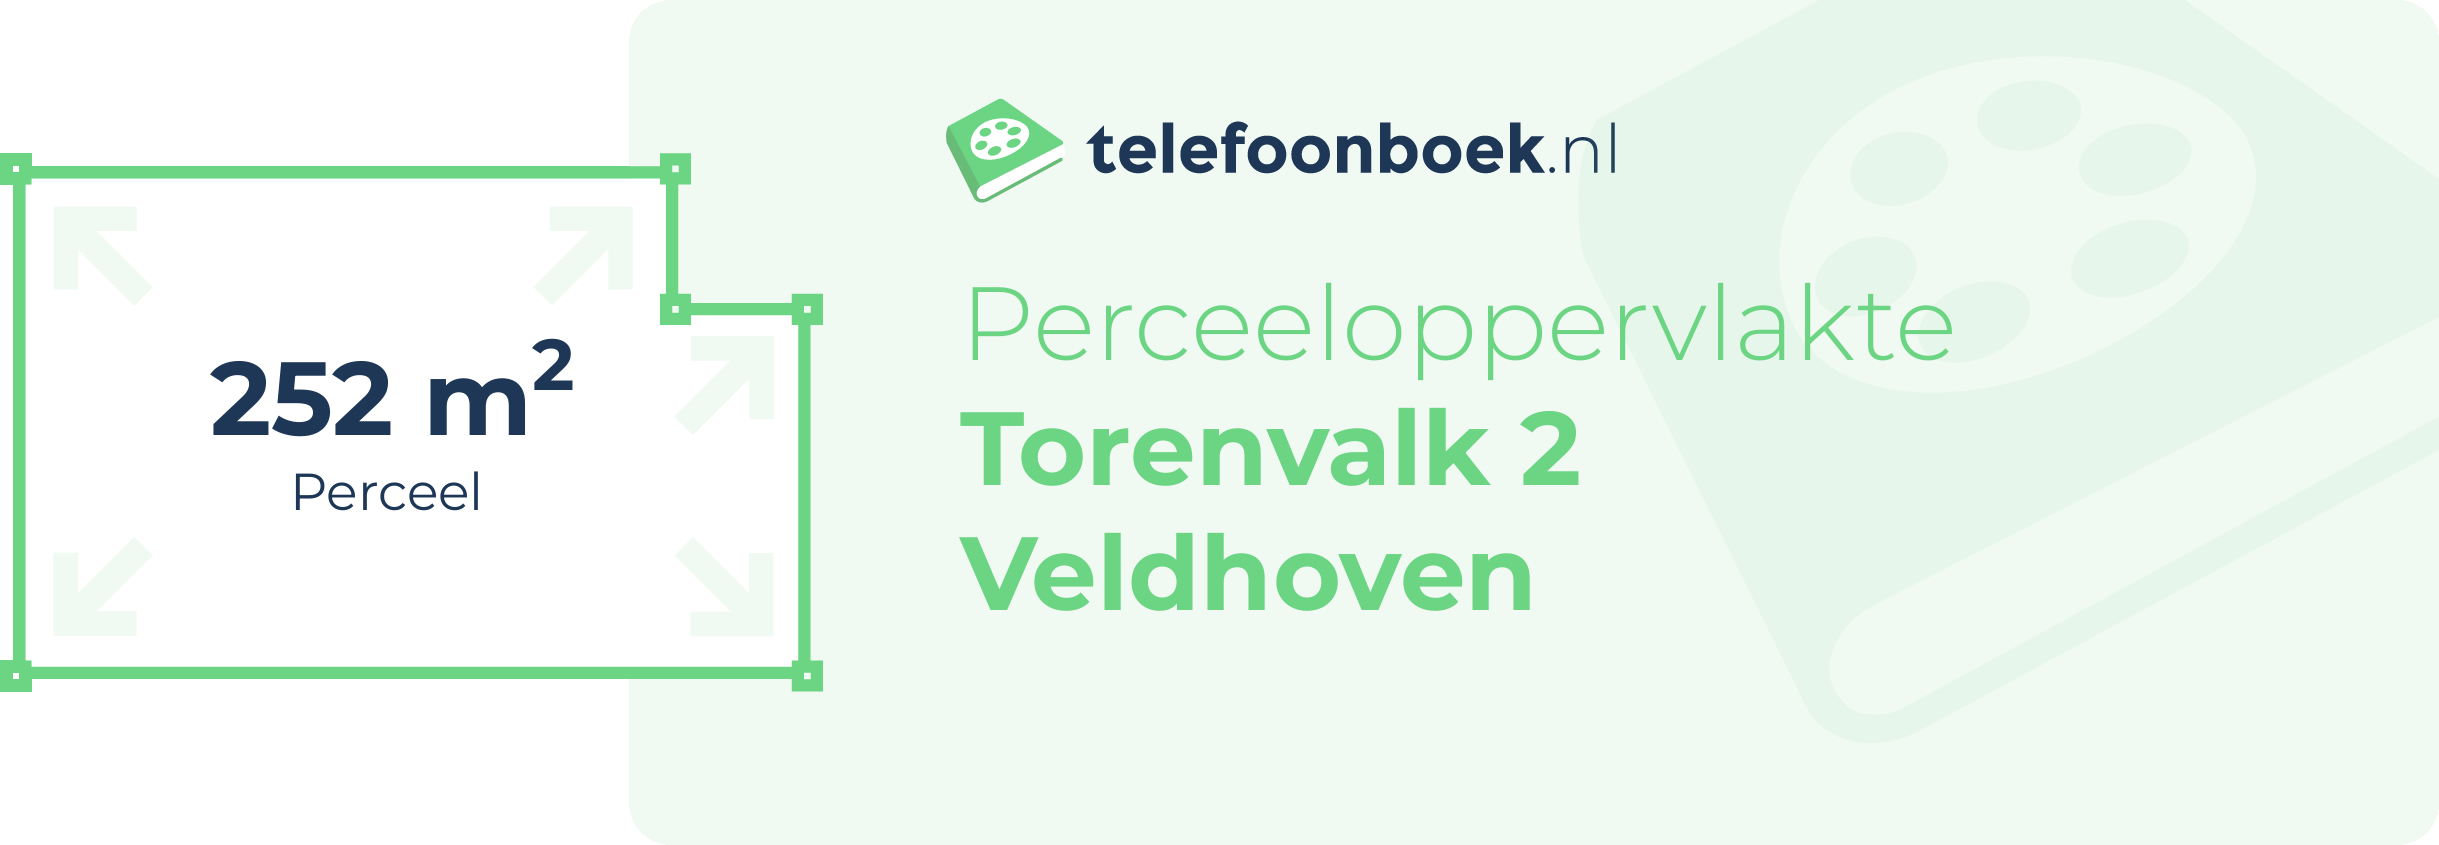 Perceeloppervlakte Torenvalk 2 Veldhoven